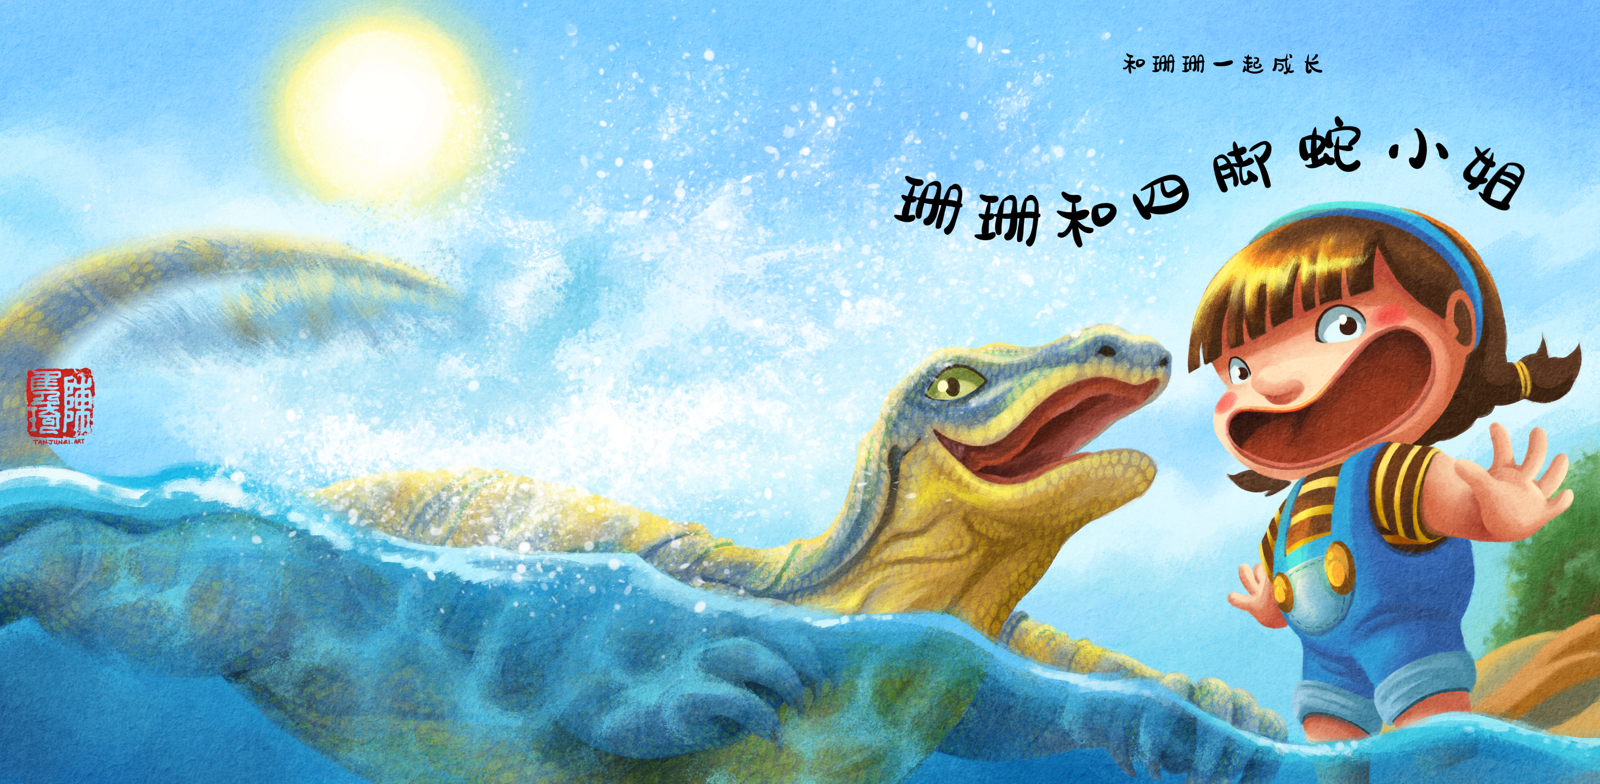 《和珊珊一起成长》的儿童绘本系列的第一本书 《珊珊和四脚蛇小姐》的封面插画设计(中文版)。珊珊和四脚蛇小姐正在海边很开心地玩水。